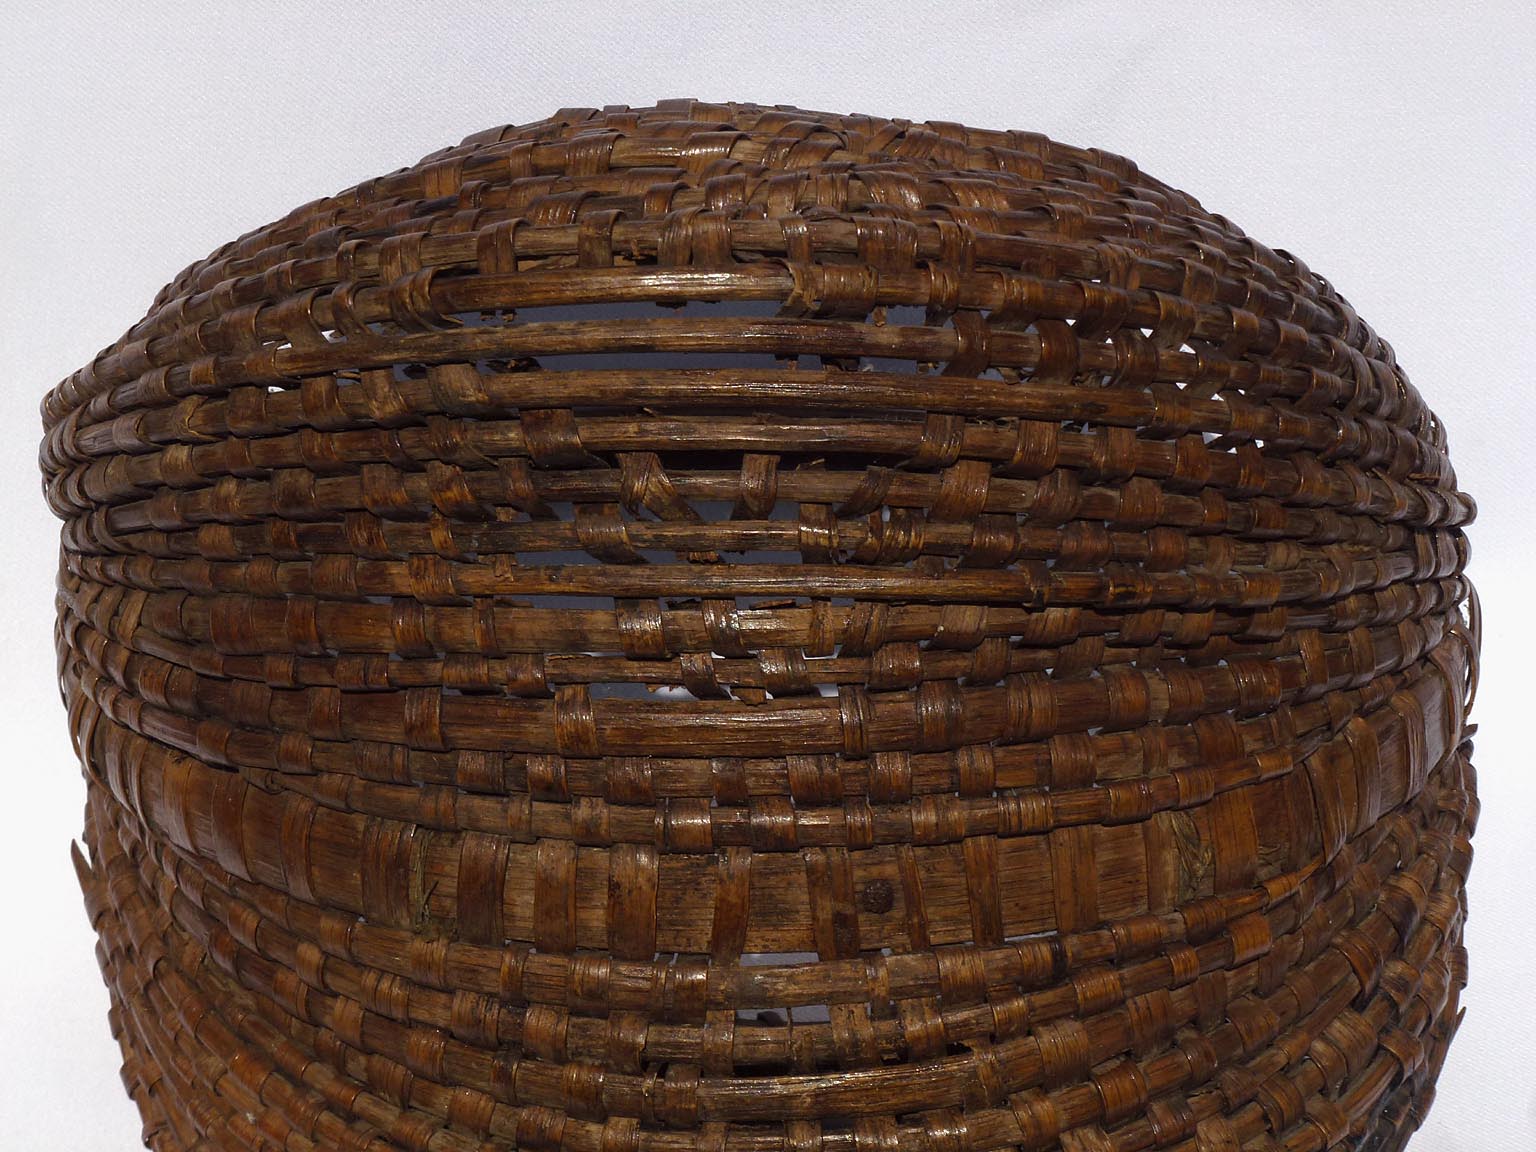 Wood splint basket